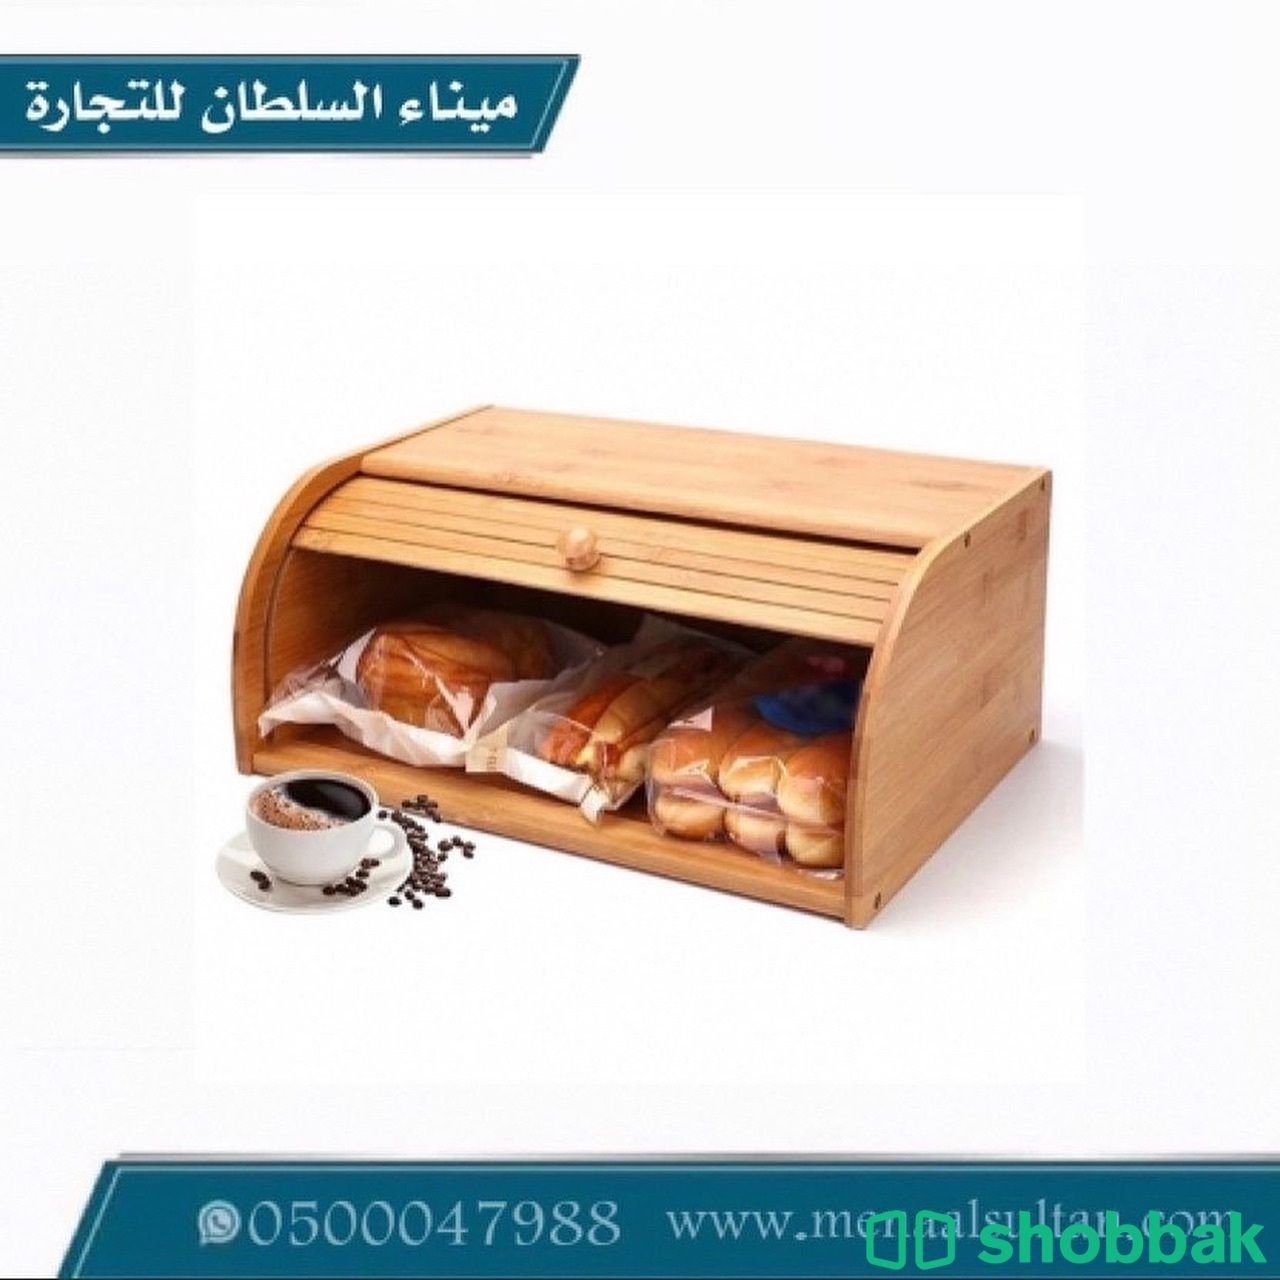 حافظة للخبز والمعجنات خشب   Shobbak Saudi Arabia